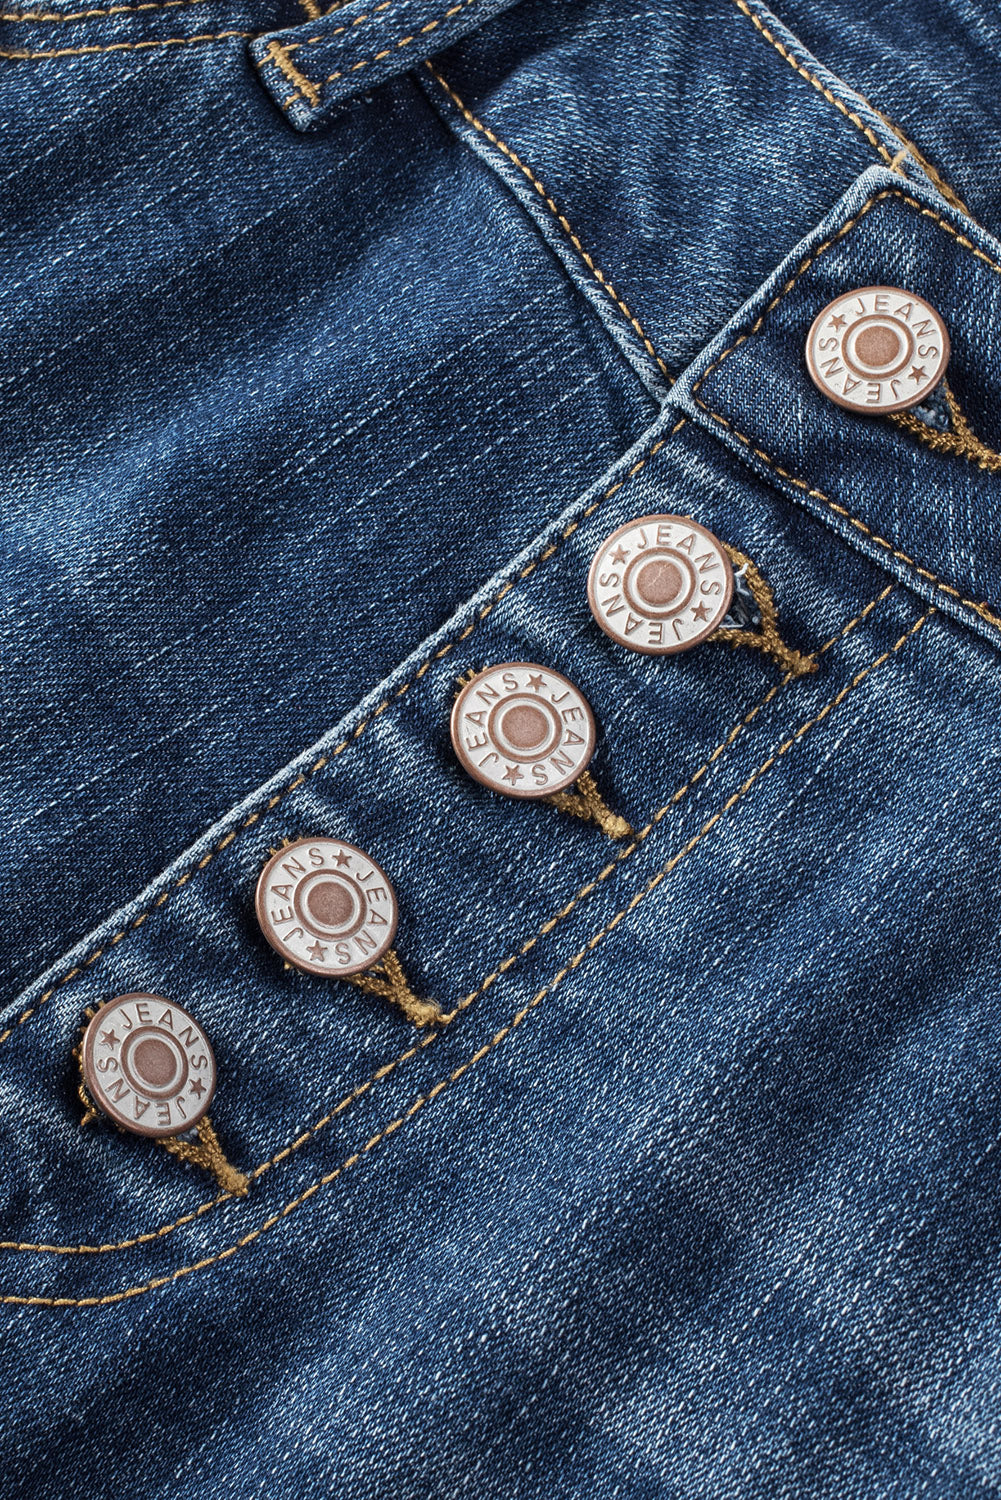 Jeans skinny a vita alta con bottoni blu invecchiati